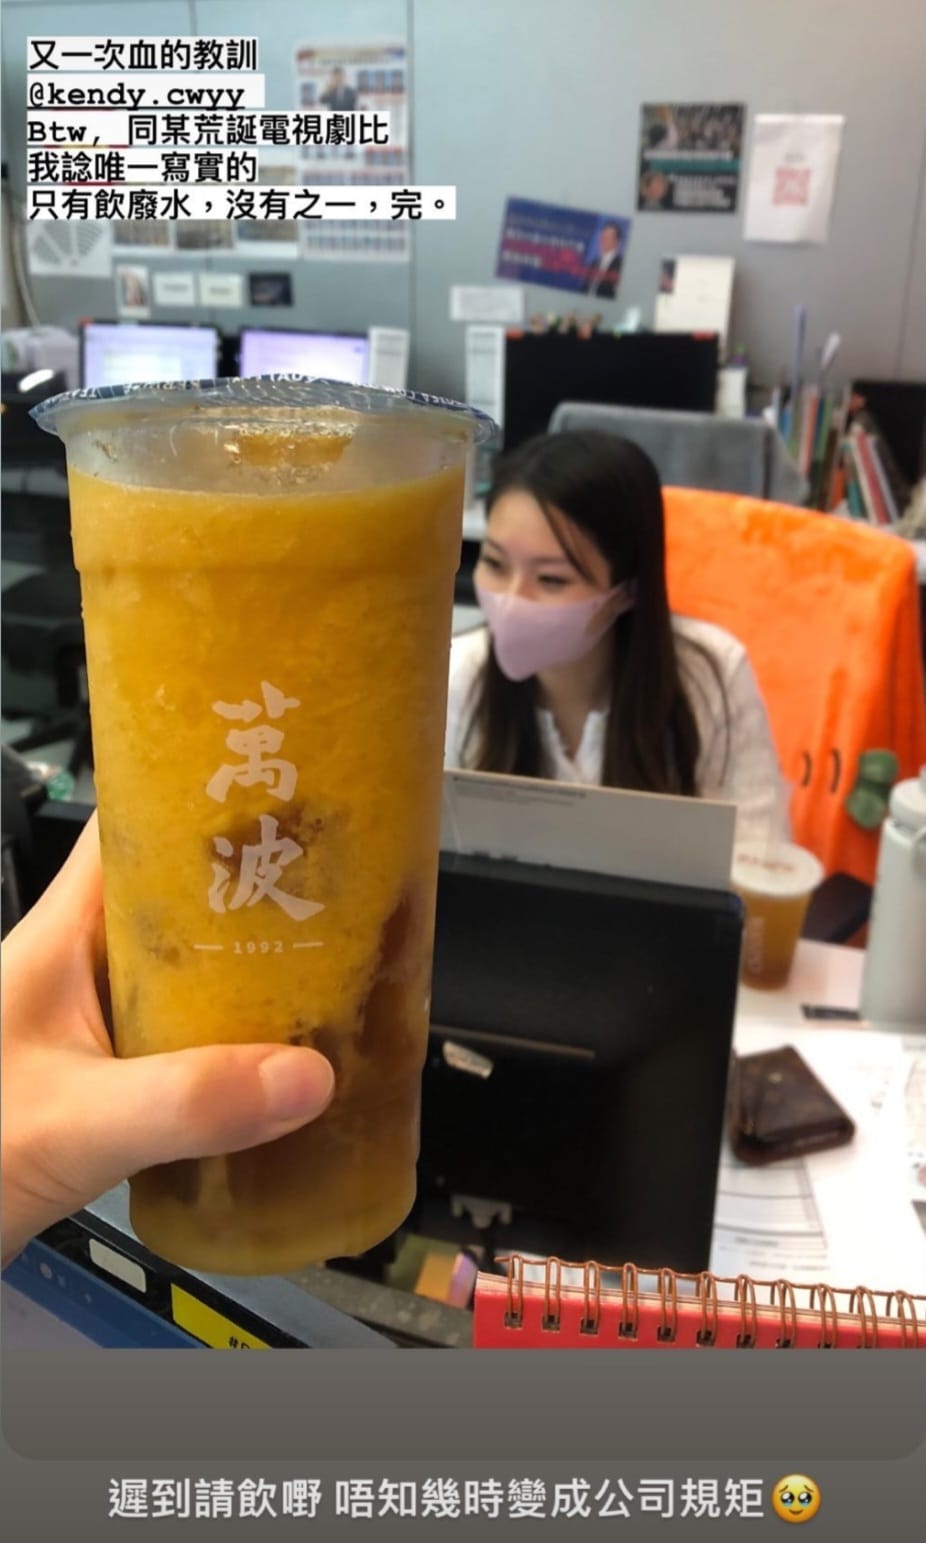 她在IG分享有同事遟到请饮「废水」的照片，对方暗指《新闻女王》荒诞。